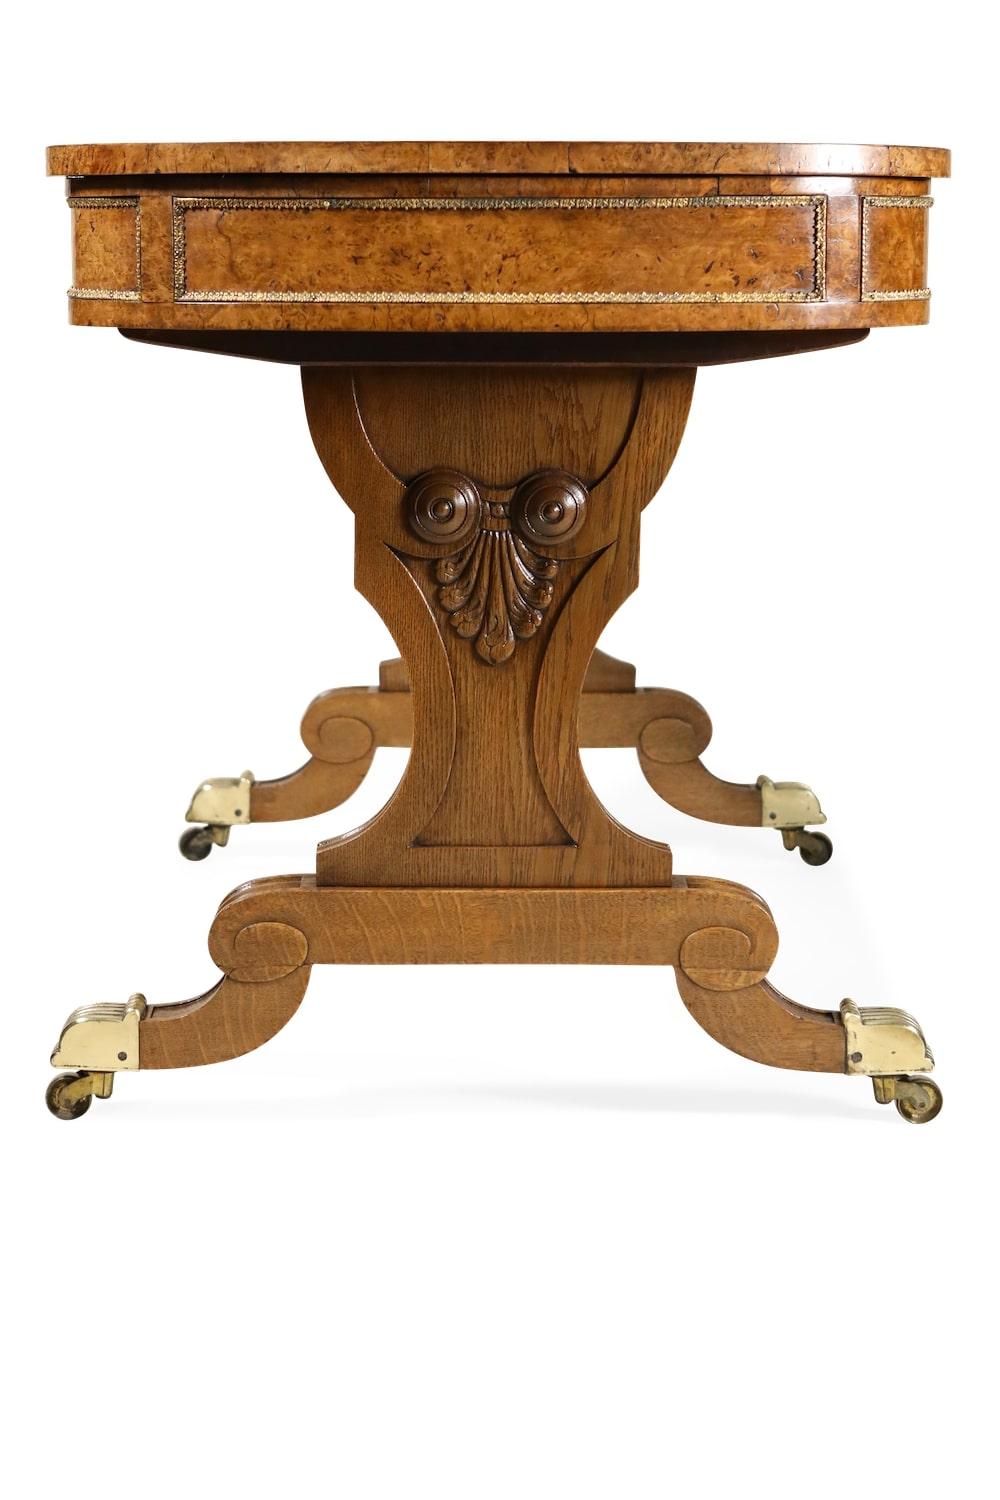 Une table d'écriture inhabituelle du début du 19e siècle en chêne têtard montée sur laiton, attribuée à Gillows, le plateau d'écriture rectangulaire à charnière encastré dans le cuir avec une pente d'écriture réglable sur un cliquet flanqué